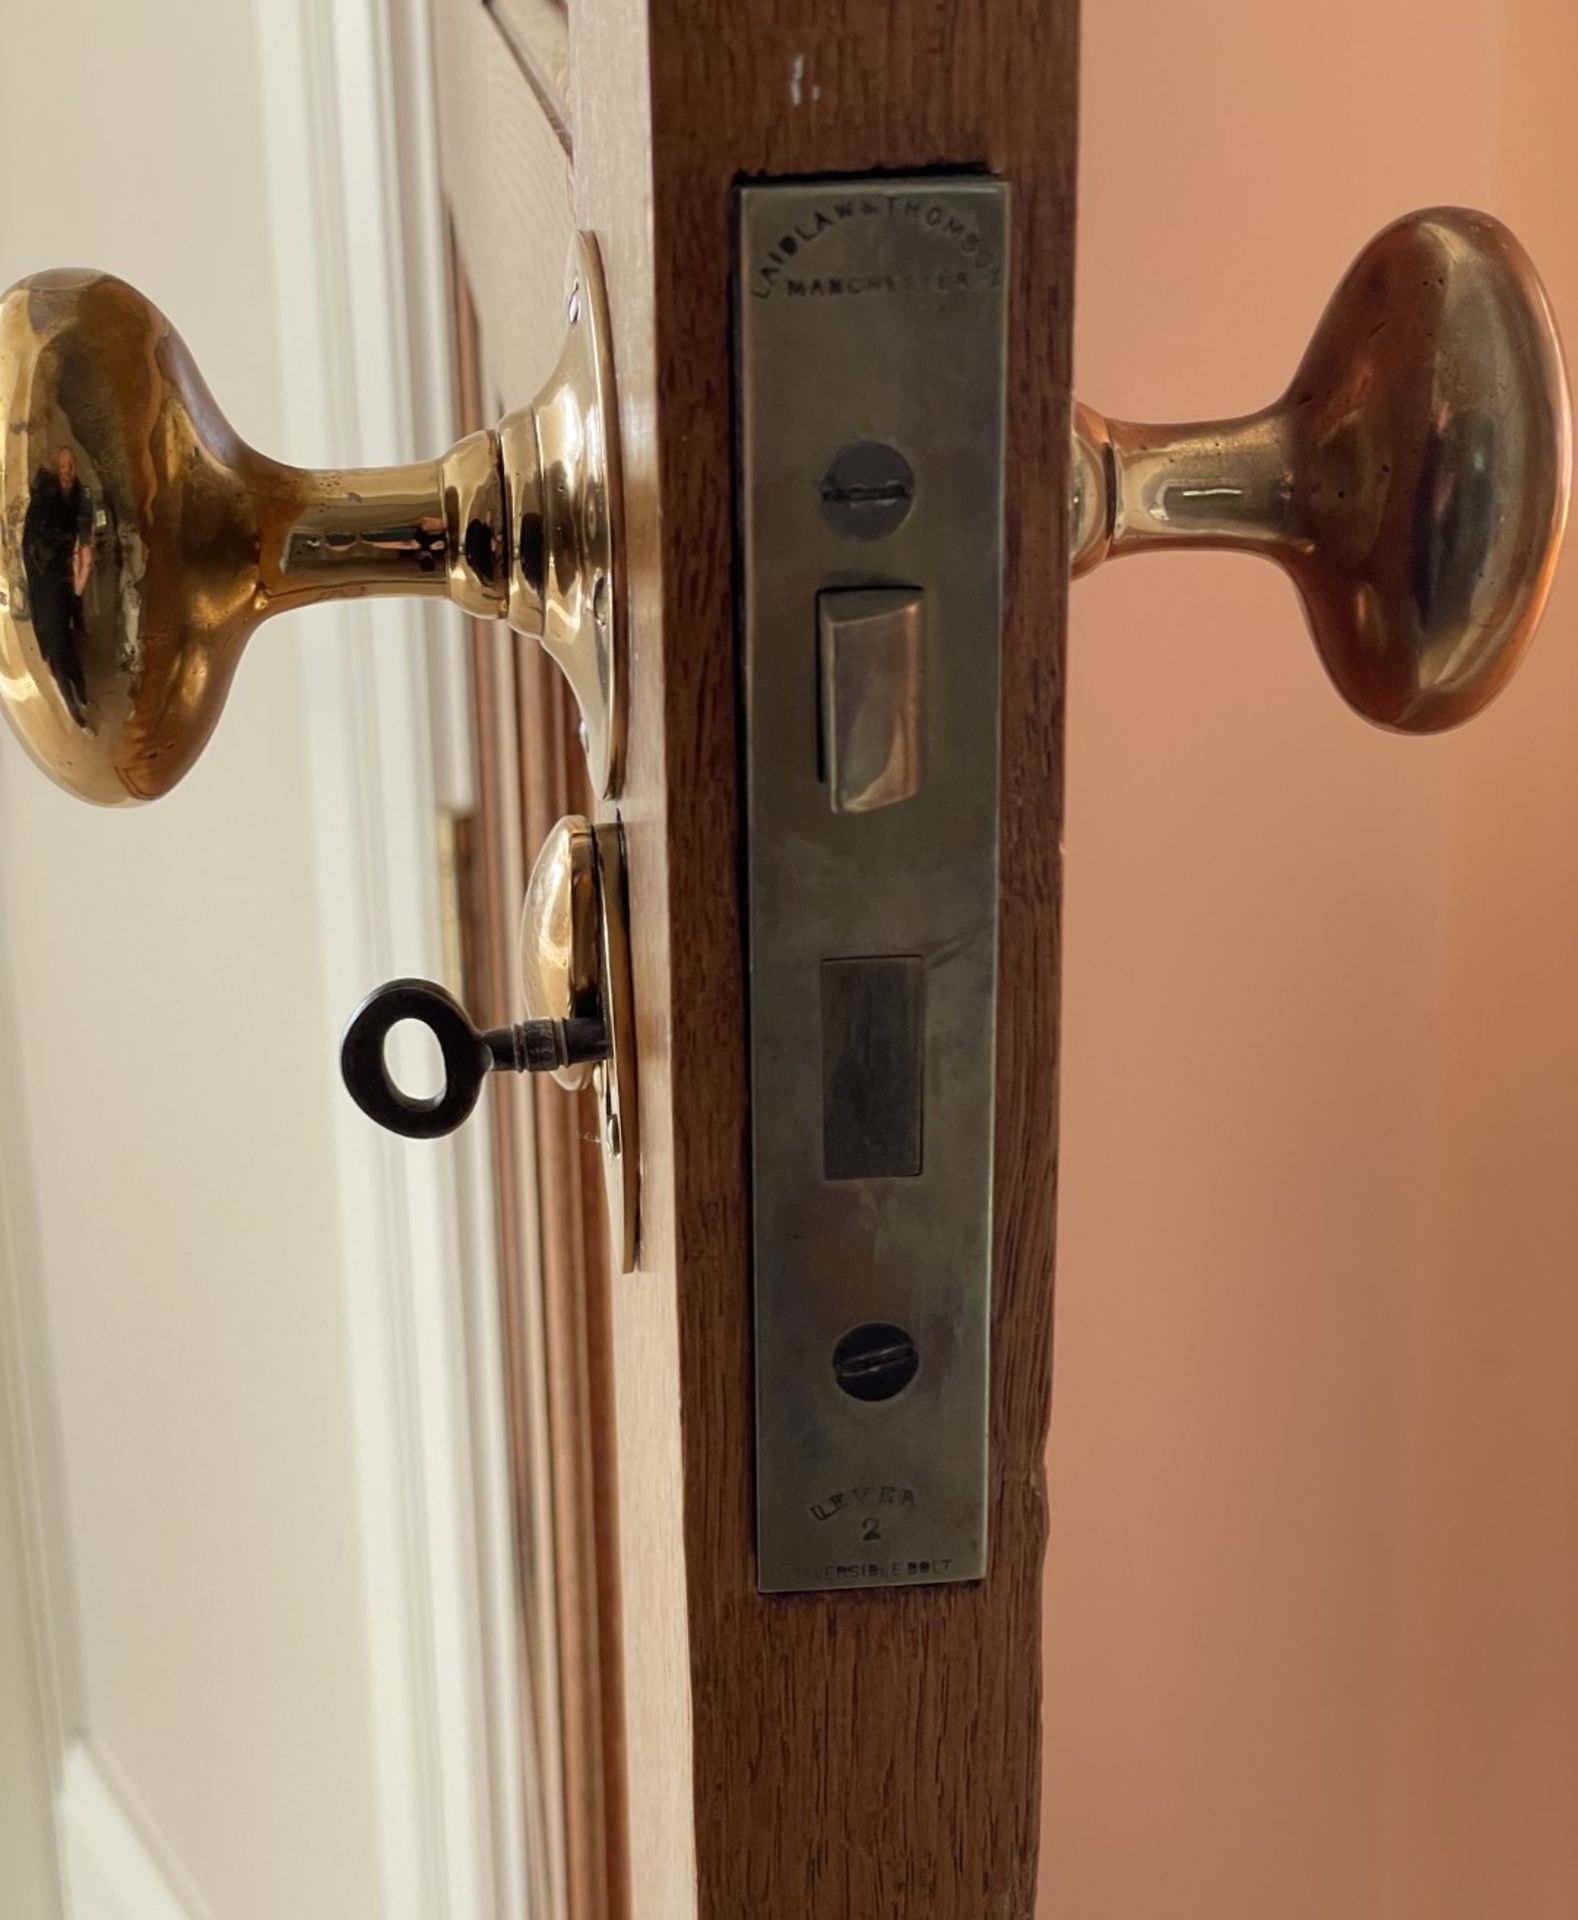 1 x Solid Wood Lockable Internal Door - Includes Handles and Hinges - Ref: PAN122 - NO VAT - Image 5 of 5